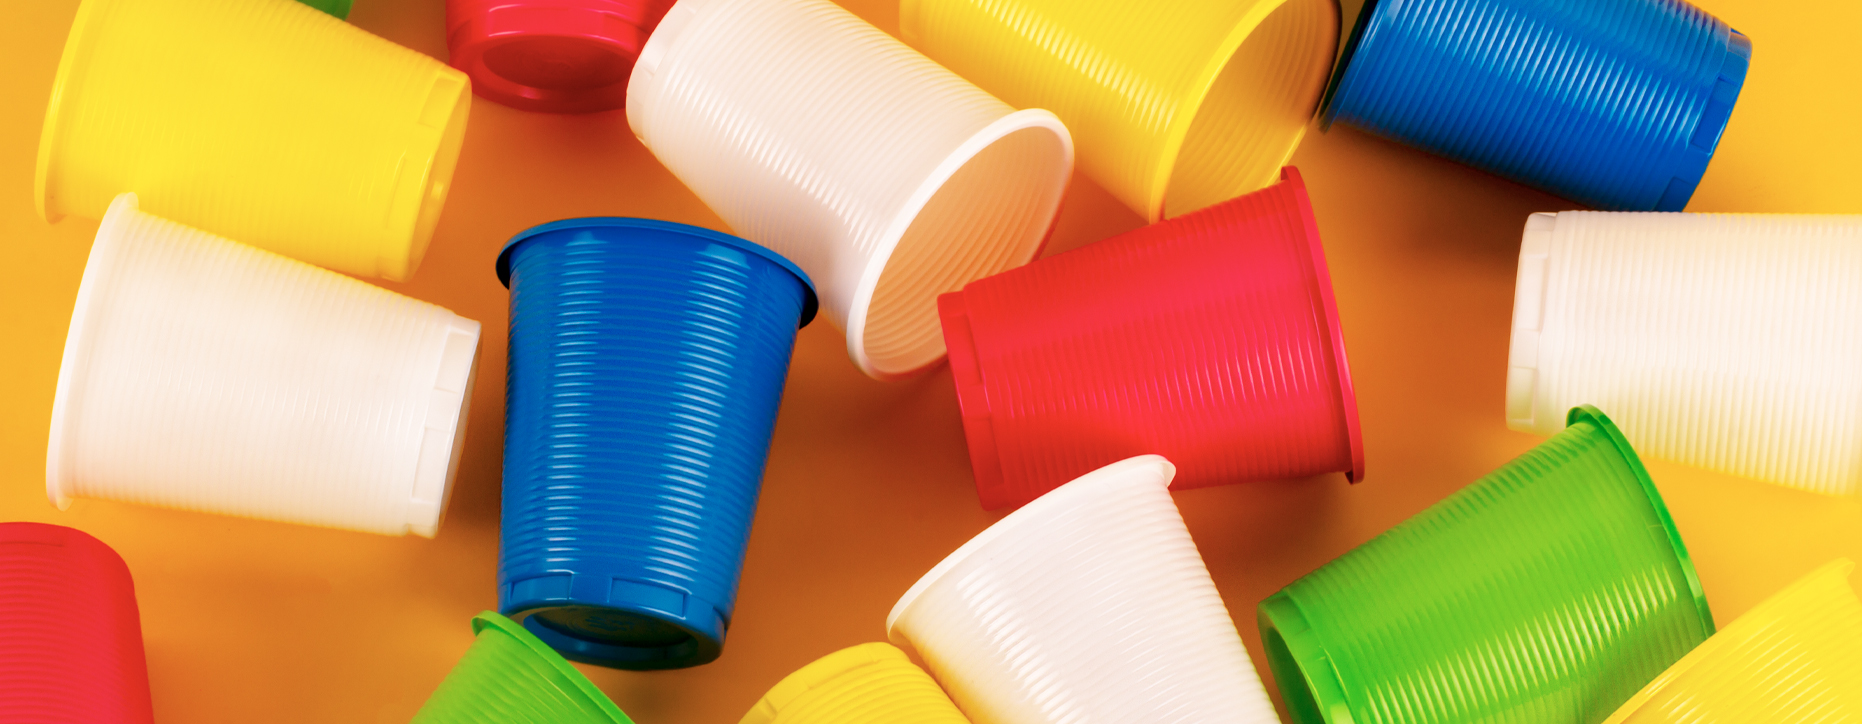 Vasos Plastico Duro, 24 Pieza Vasos Plastico, 6 Colores Diferentes